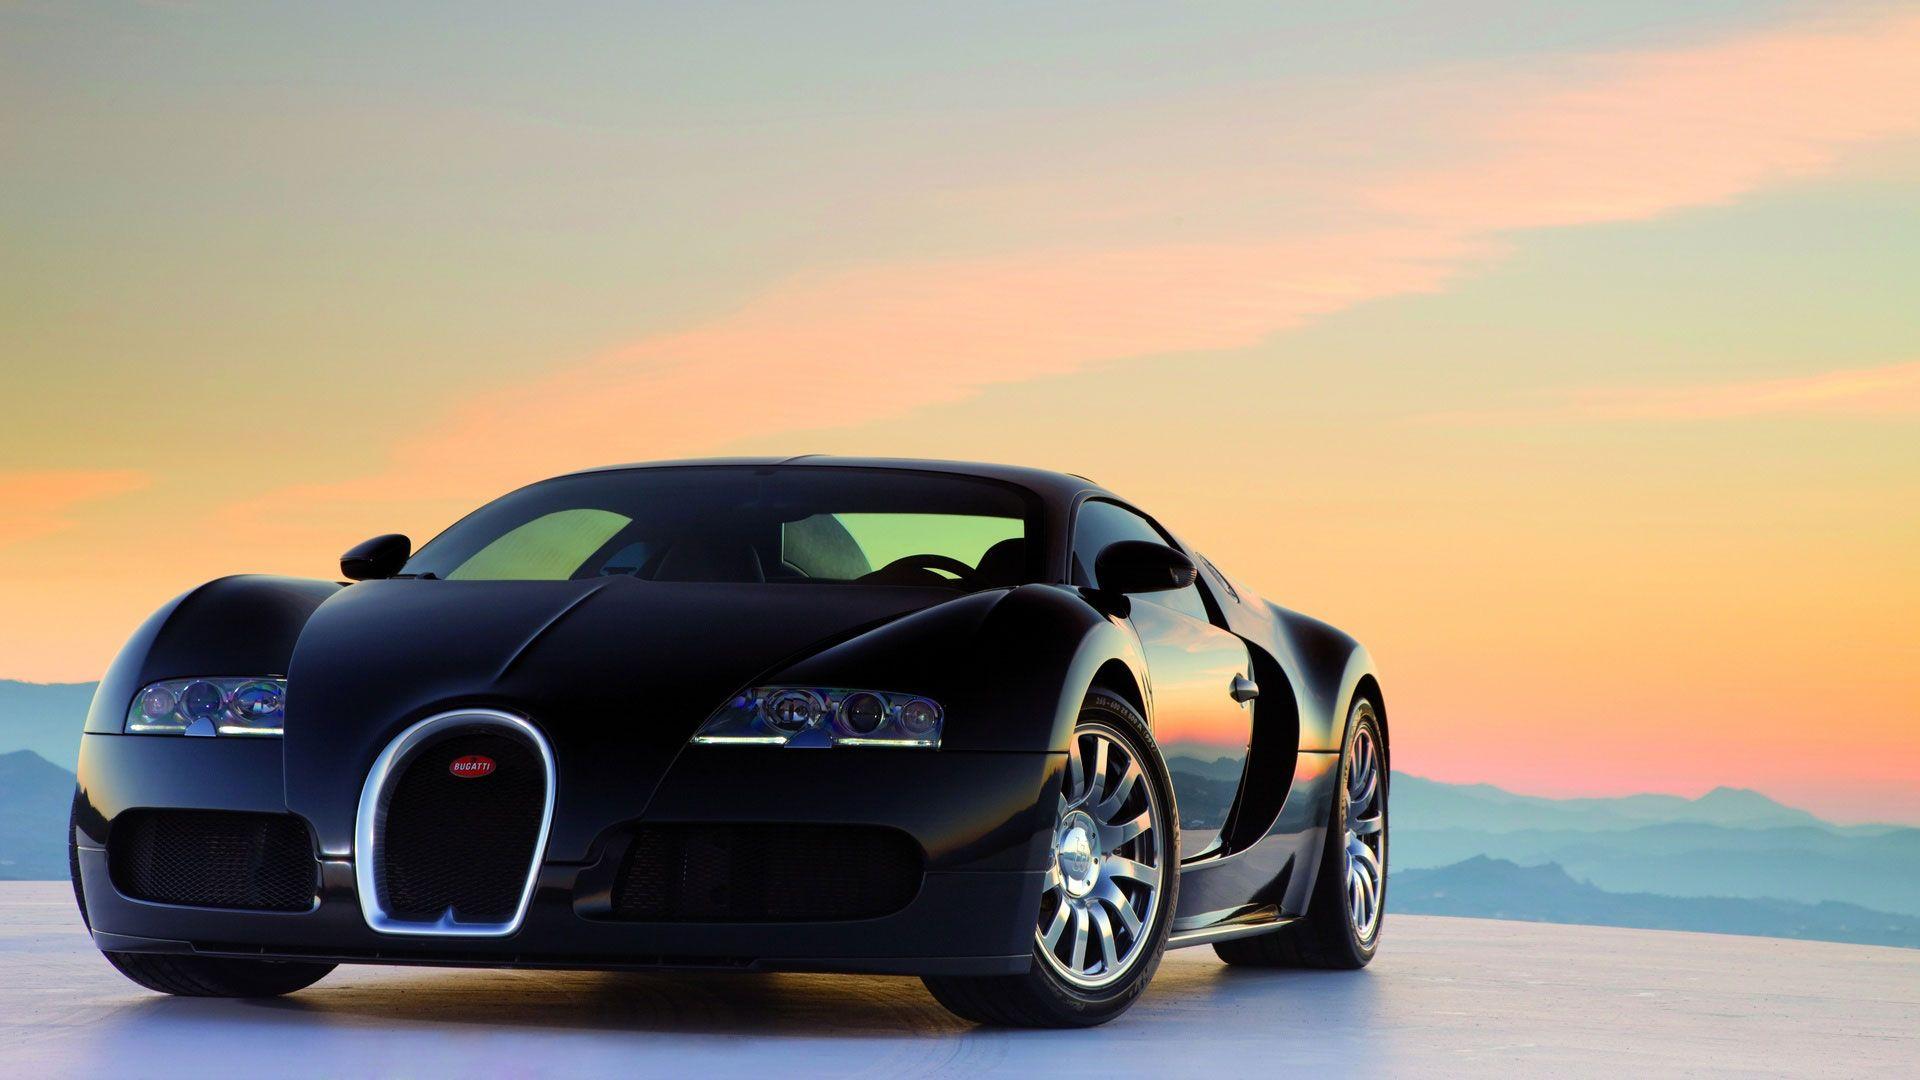 Chi phí bảo dưỡng Bugatti Chiron trong 4 năm đủ để mua siêu xe Lamborghini  Ferrari